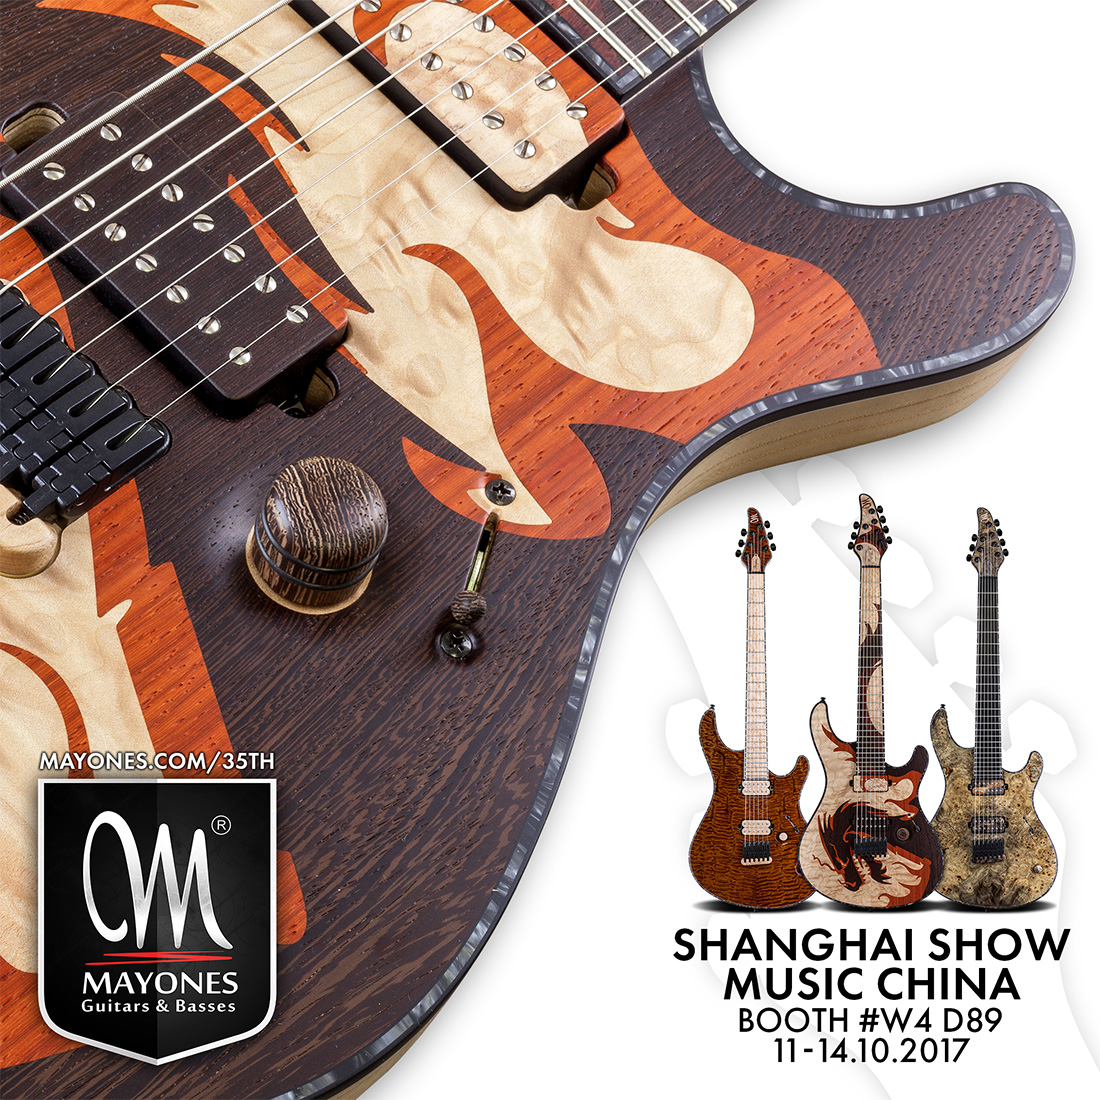 Mayones Guitars & Basses at Music China 2017